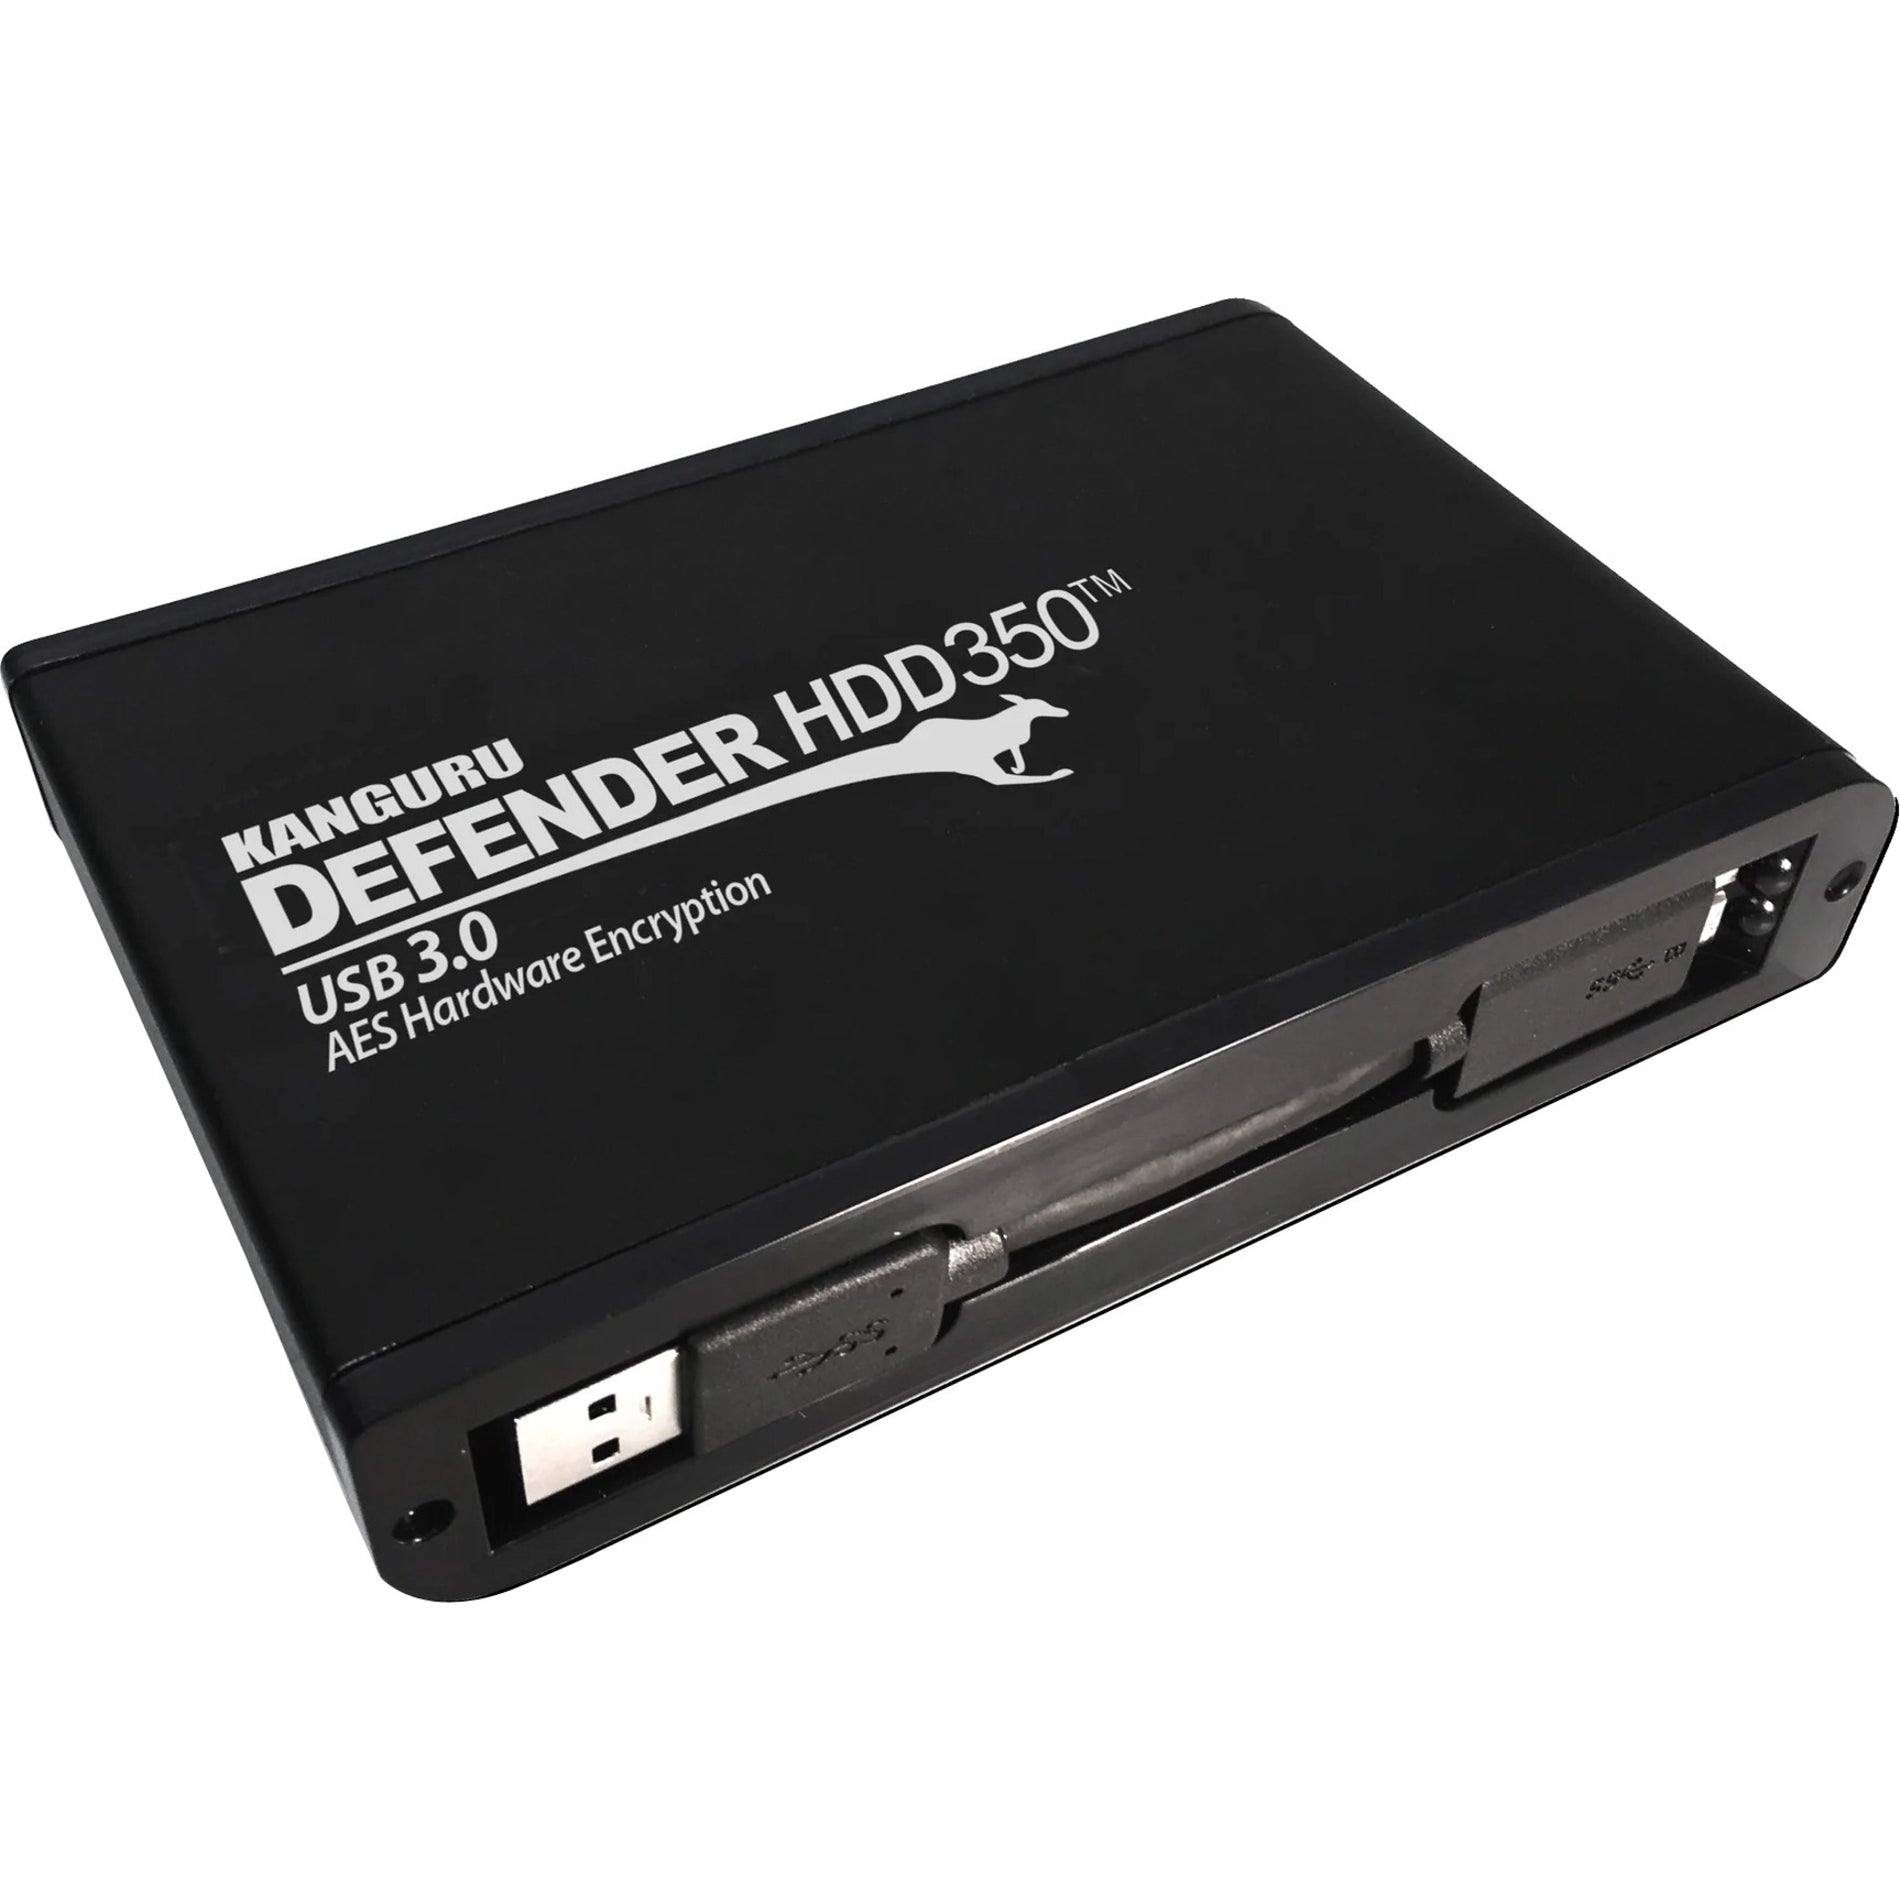 Kanguru KDH3B-350F-4T Defender HDD350 Hard Drive, 4TB, USB 3.2, 256-bit Encryption